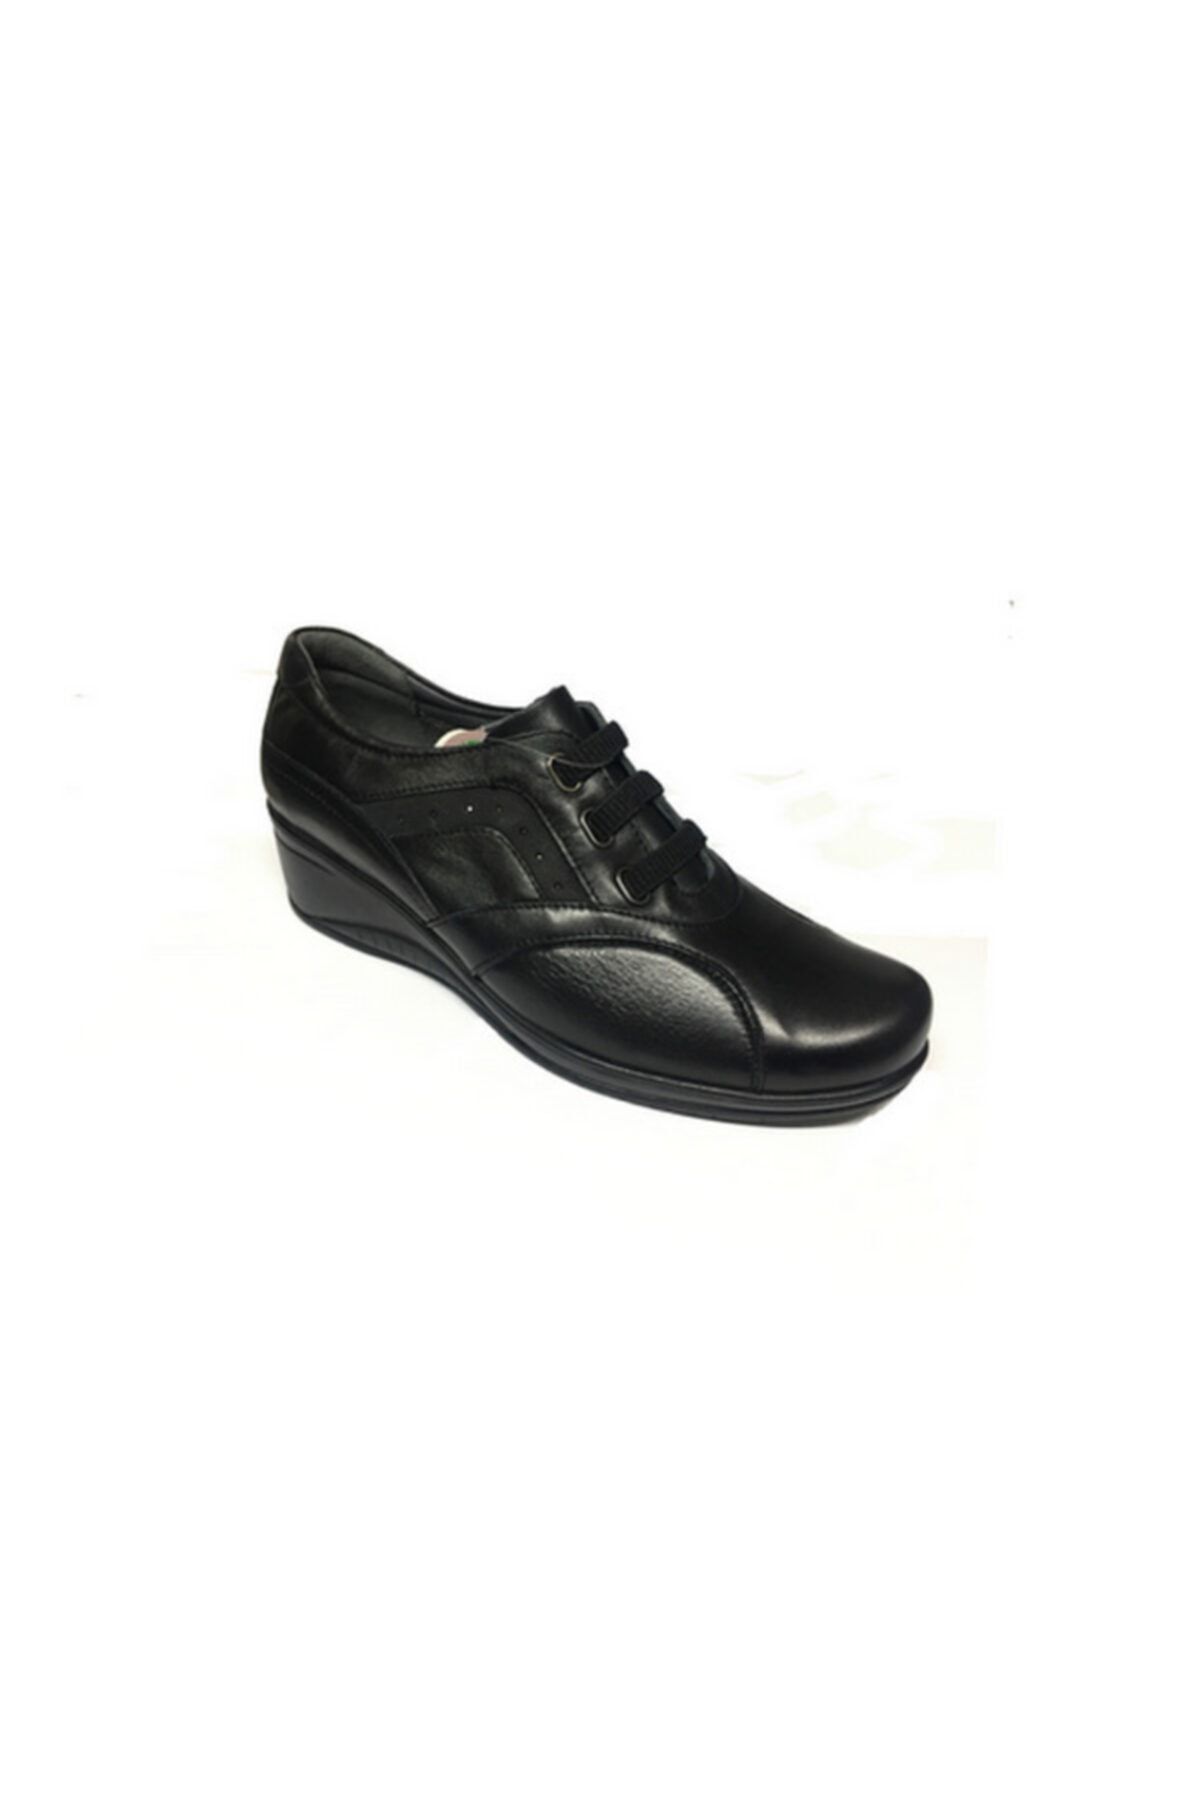 Forelli Defne-g Comfort Kadın Ayakkabı Siyah